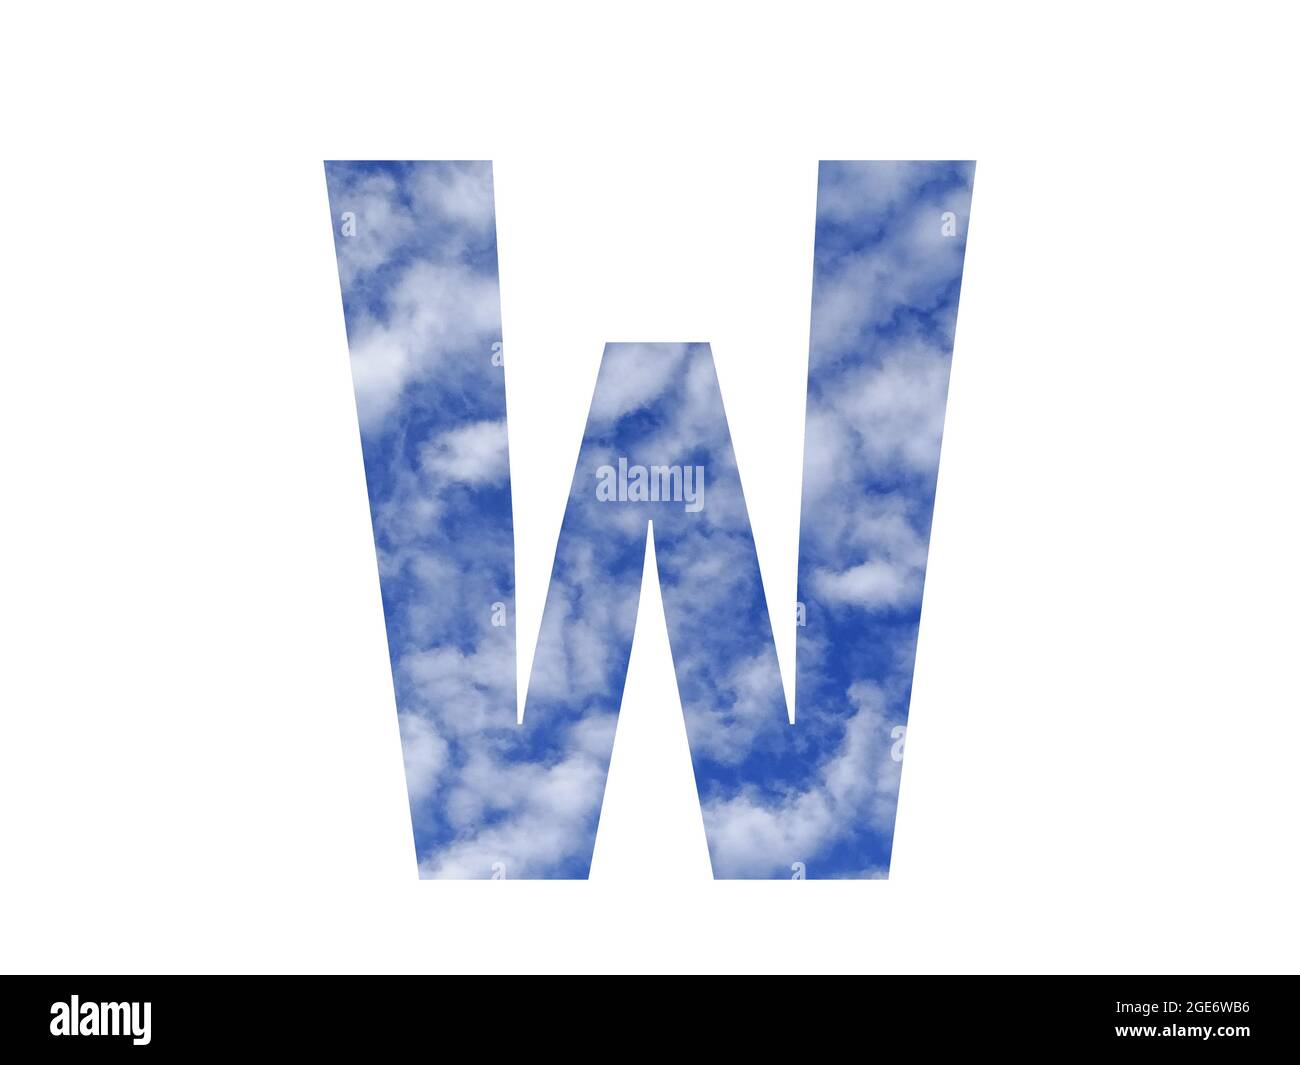 Lettera W dell'alfabeto fatta con cielo blu e nuvole bianche, isolata su sfondo bianco Foto Stock